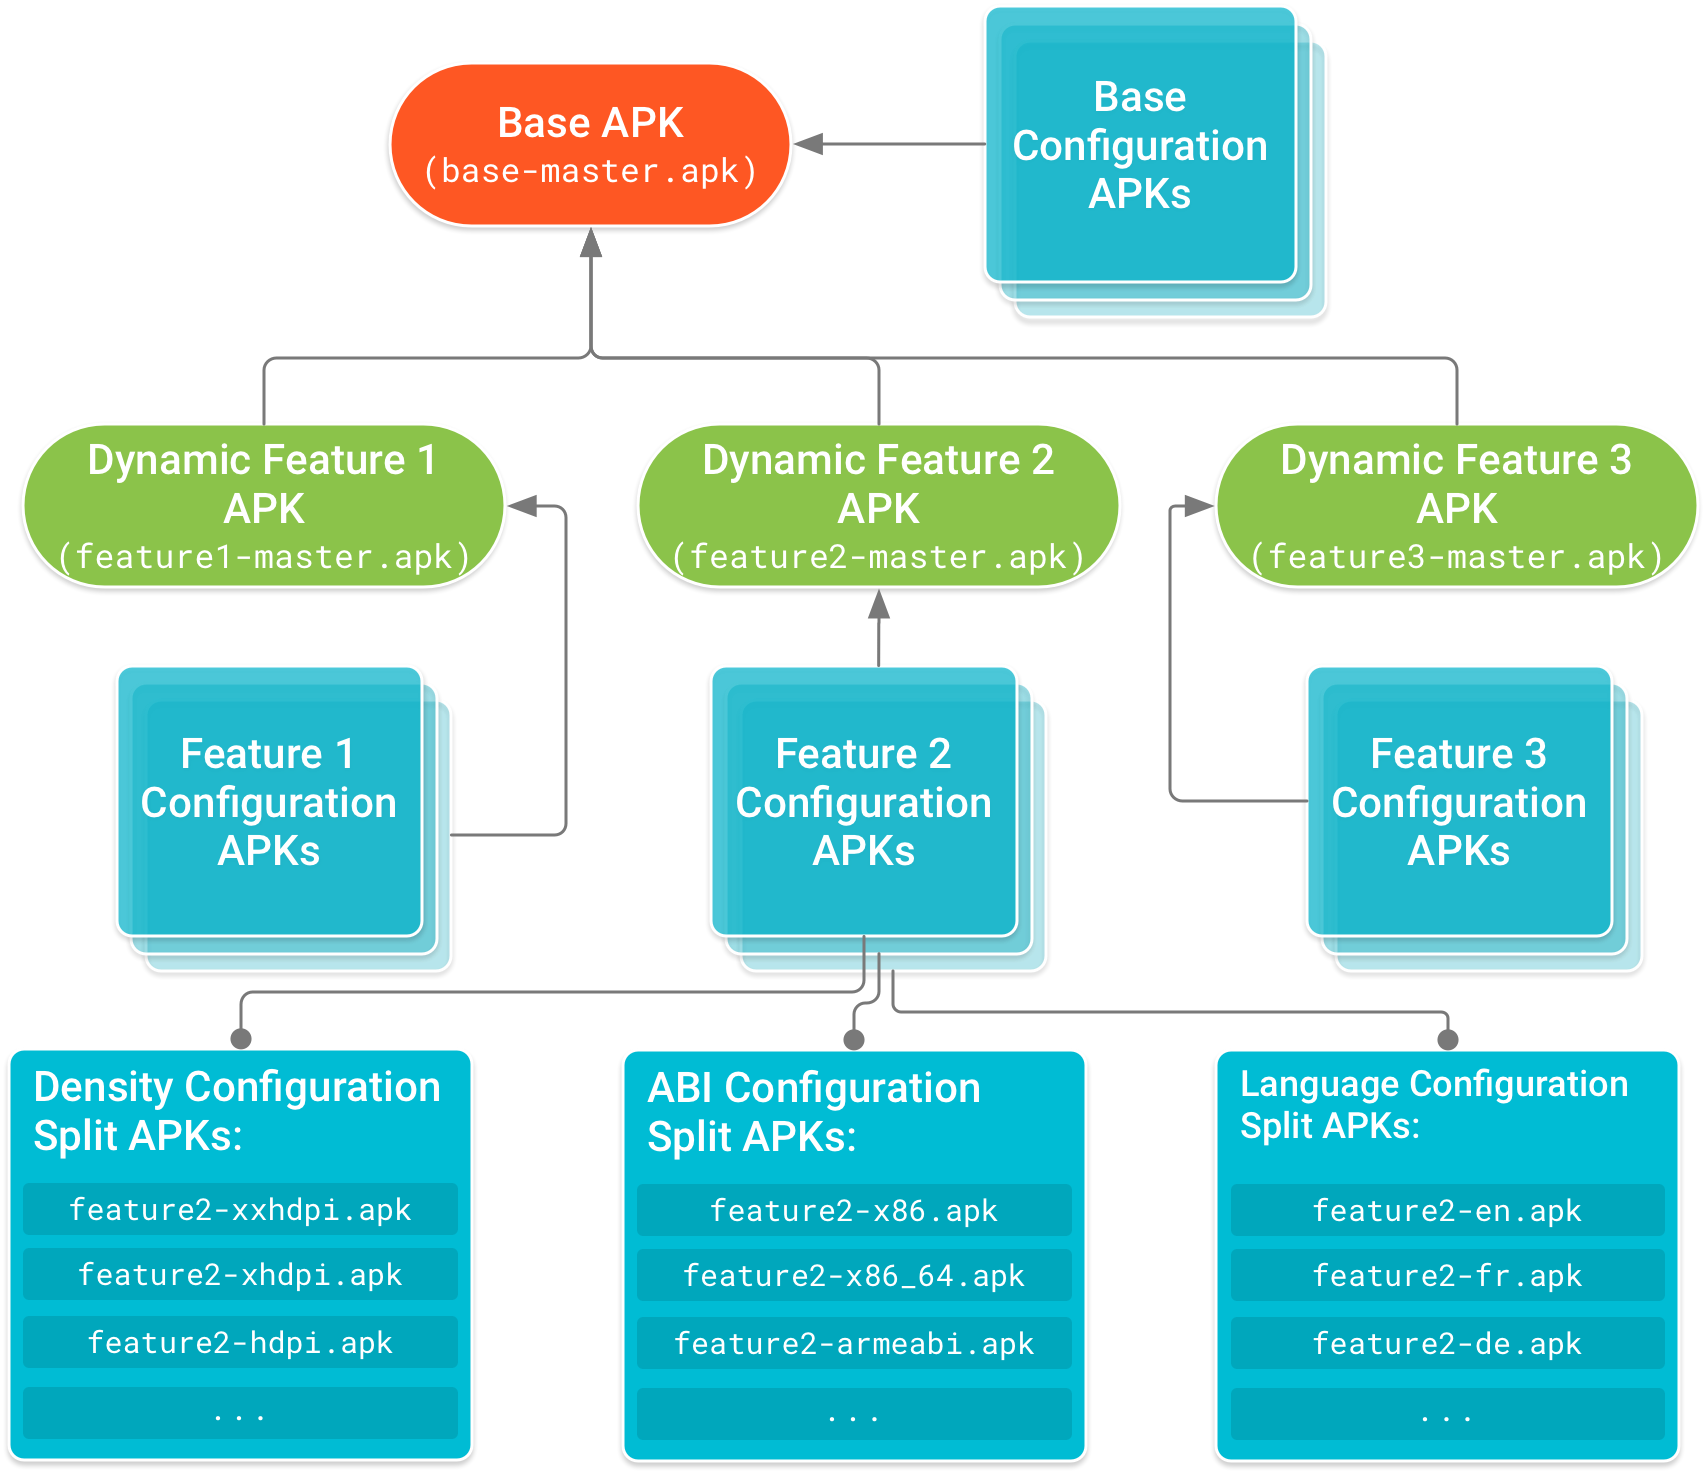 O APK básico está no topo da árvore, e os APKs do módulo de recursos têm
uma dependência. APKs de configuração, que incluem
código e recursos específicos da configuração do dispositivo para base e cada
APK de módulo de recursos, formam os nós da árvore de dependência.